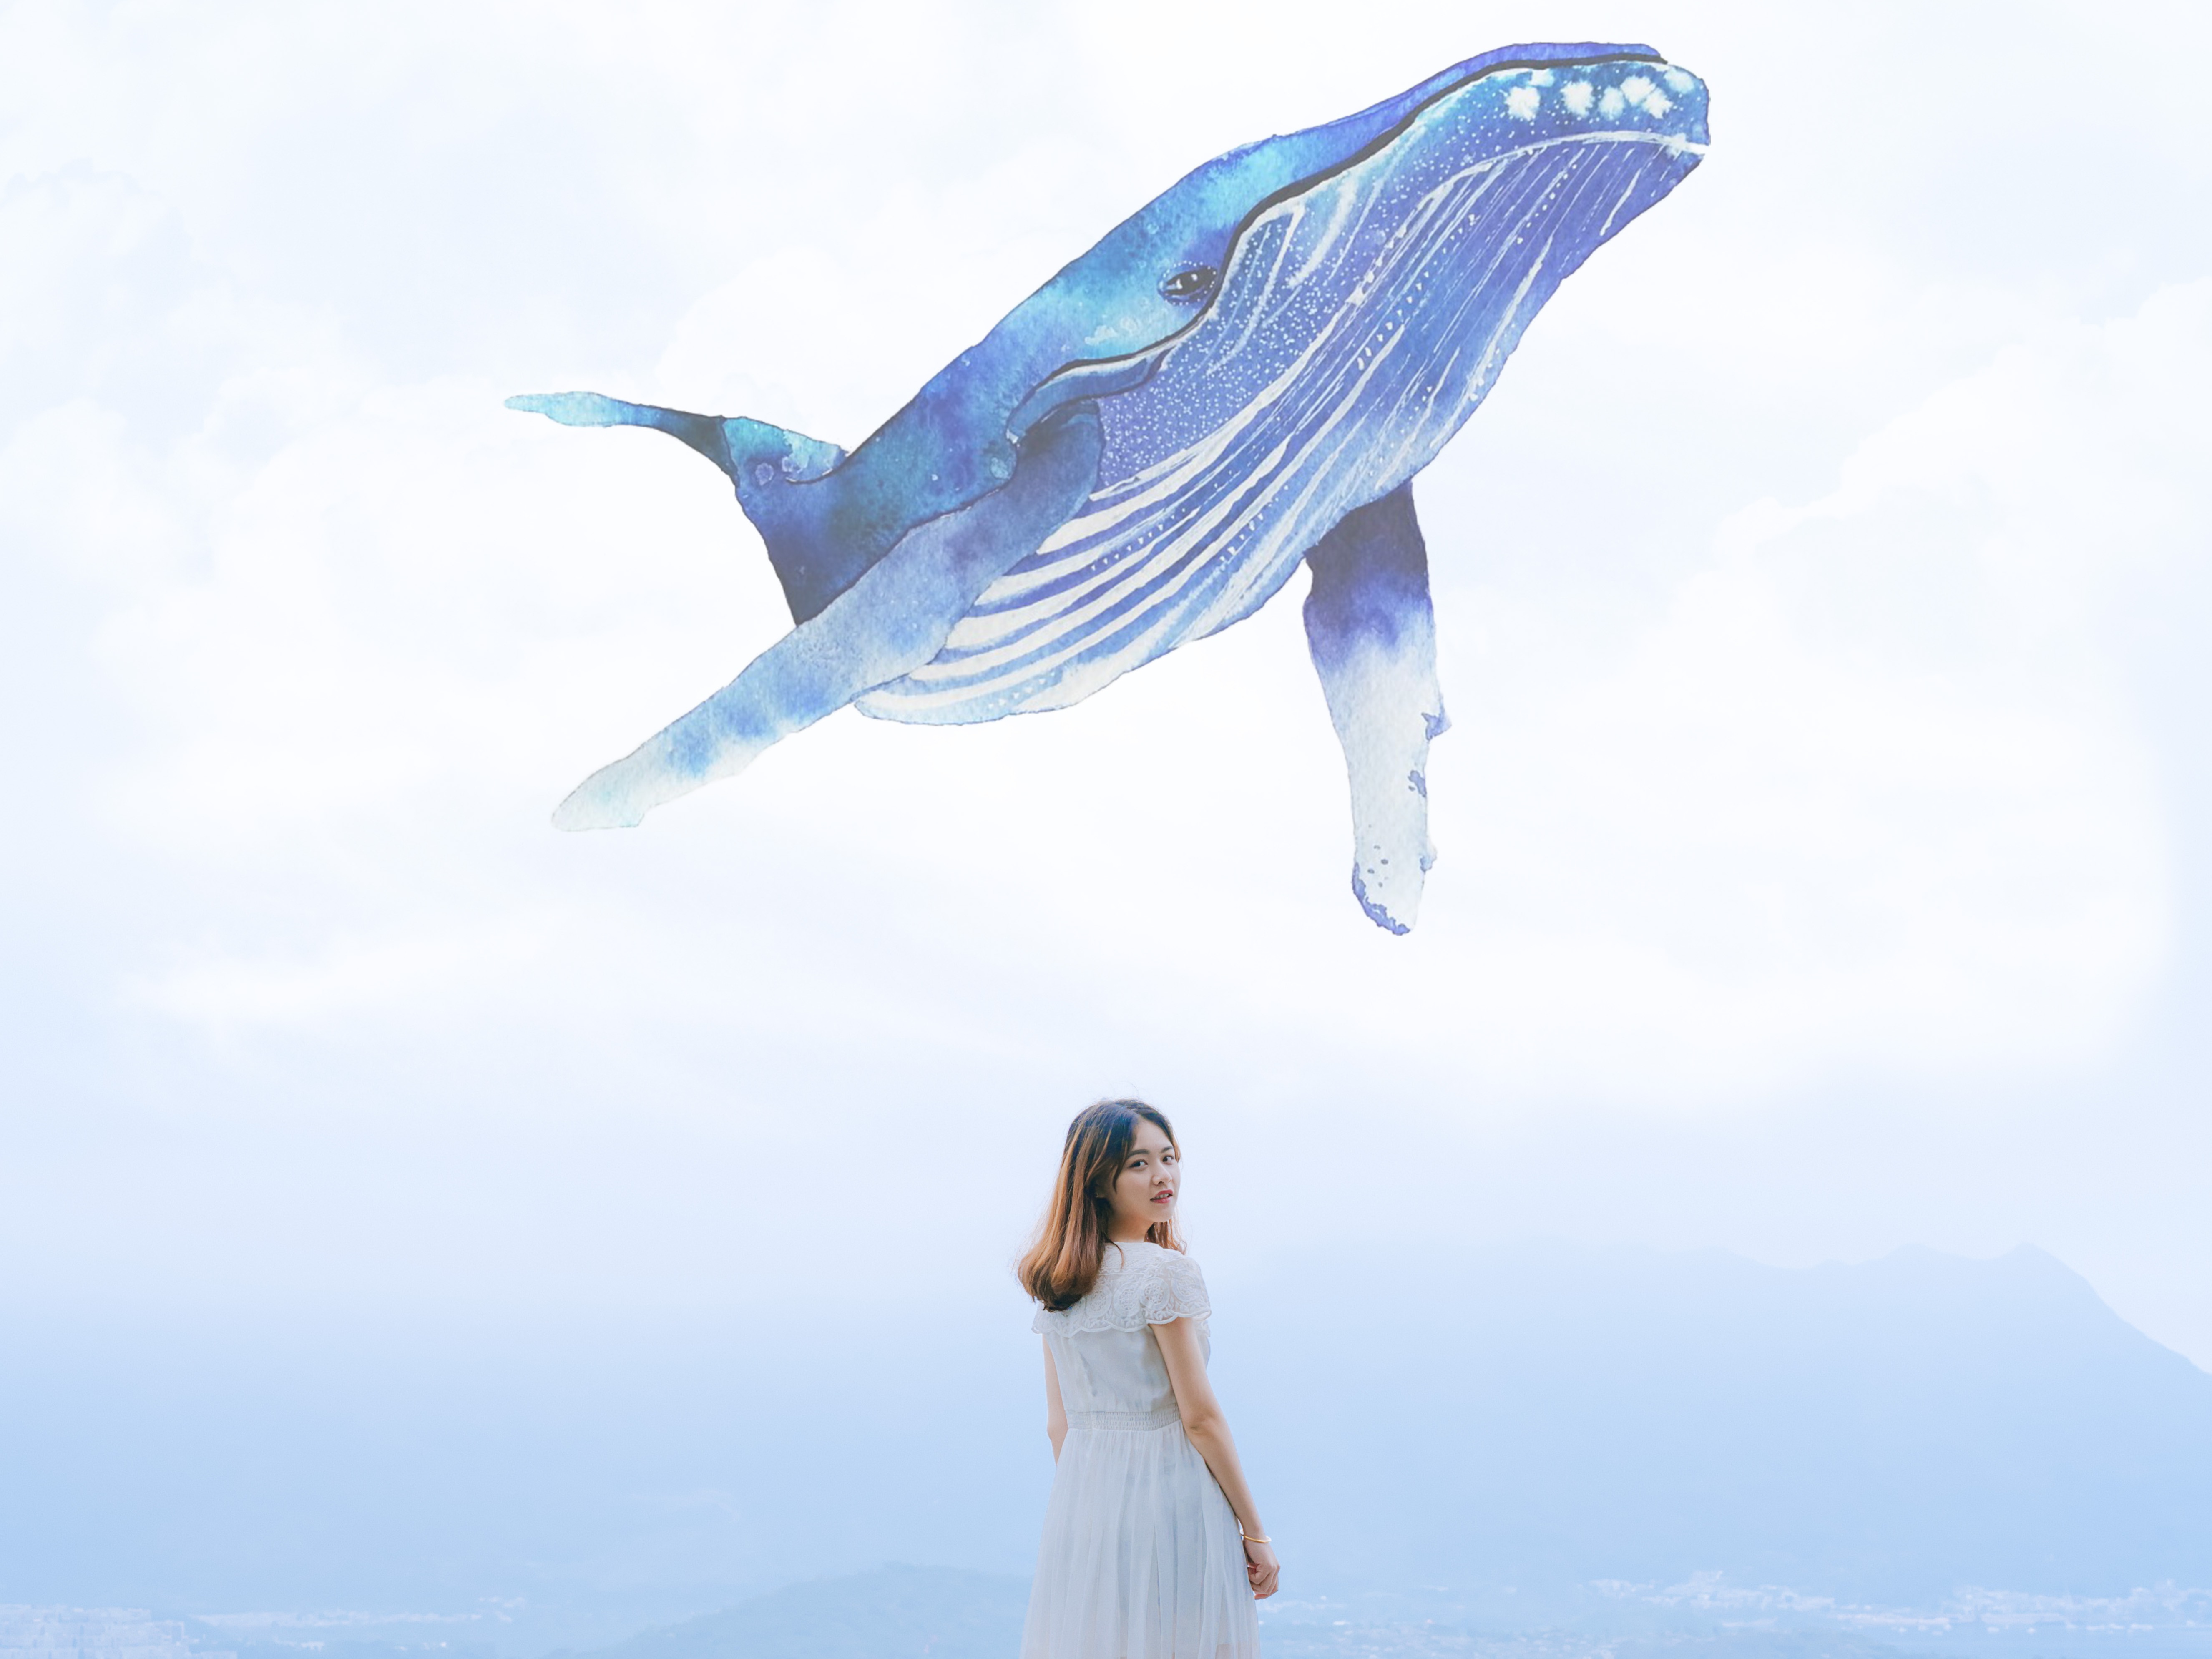 52赫兹鲸鱼-白日梦系列 摆件 創意禮物 | 赞尔JARLL品牌官方网站